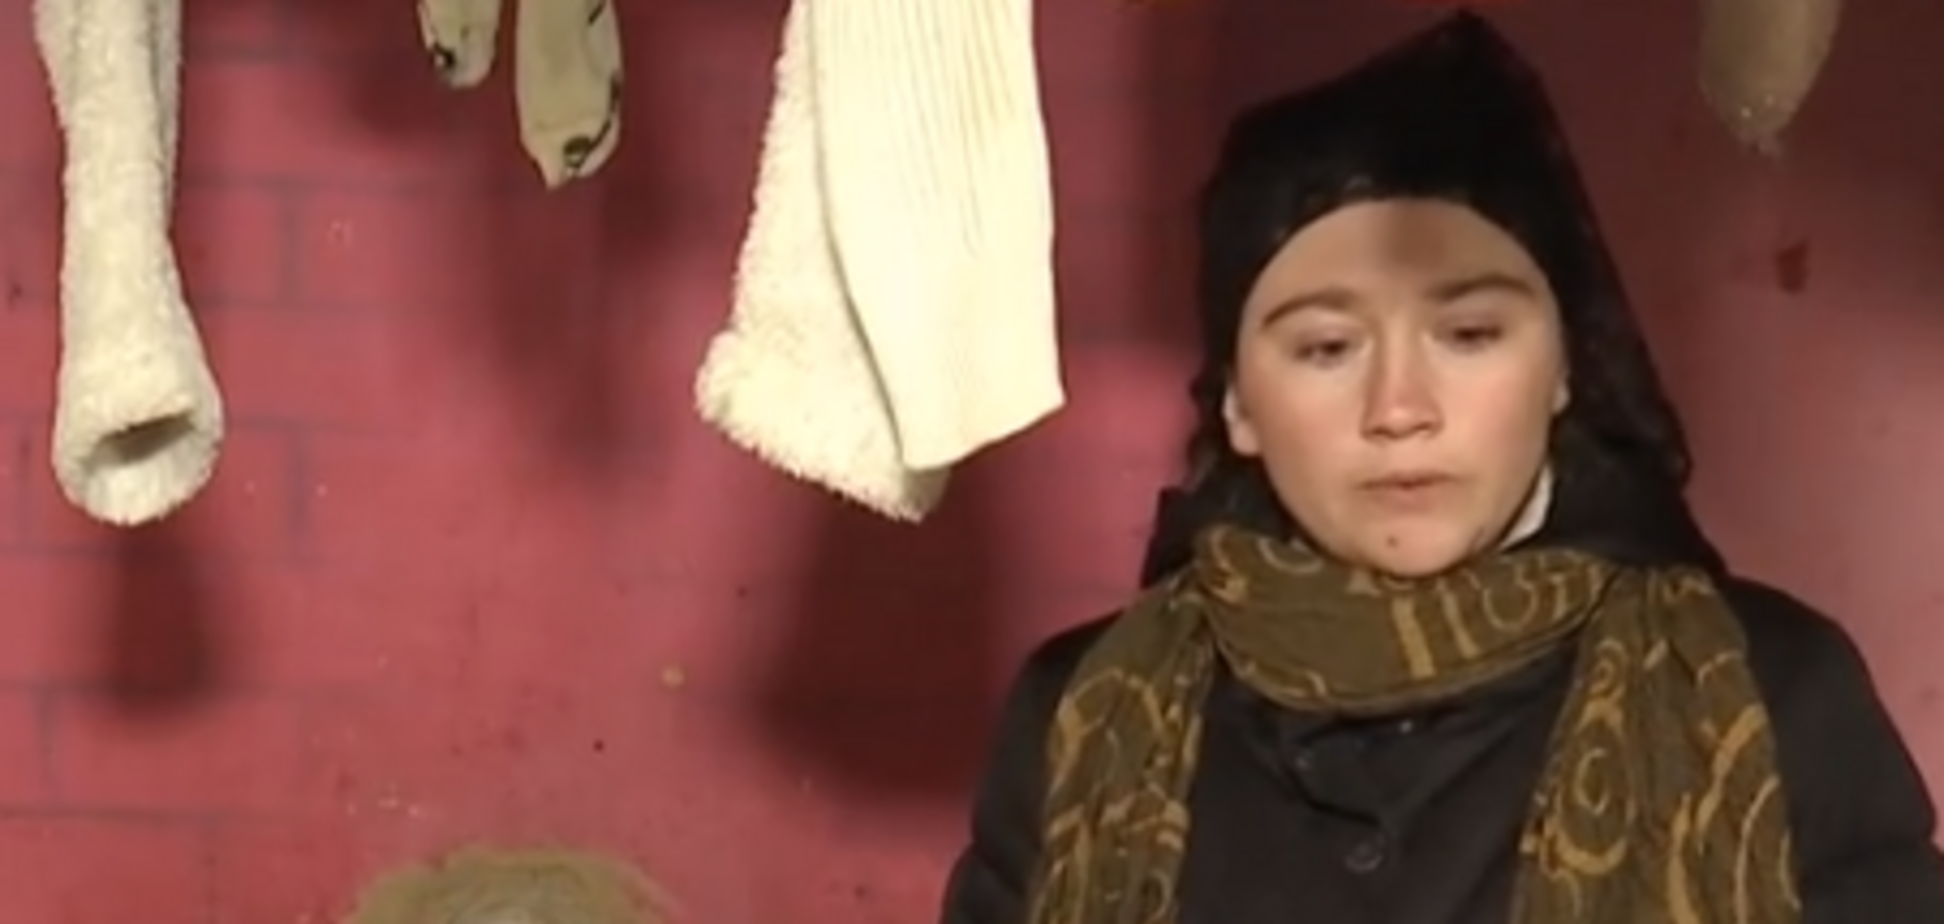 Шкіра потрісказалася, очі закрили бинтами: смерть малюка на Київщині викликала скандал